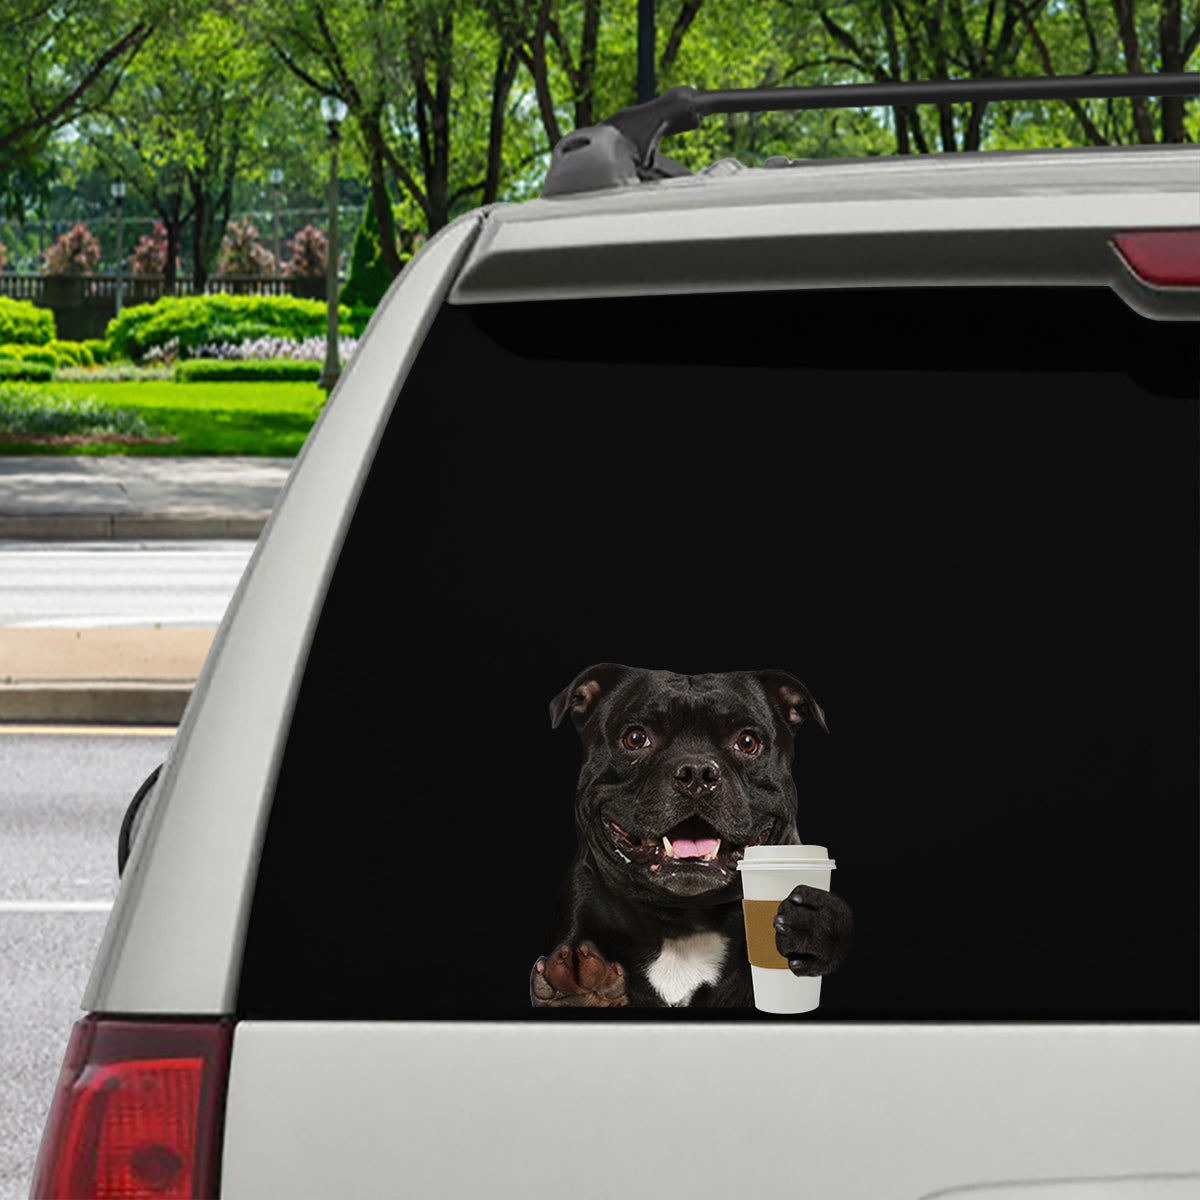 Good Morning - Staffordshire Bull Terrier Car/ Door/ Fridge/ Laptop Sticker V1